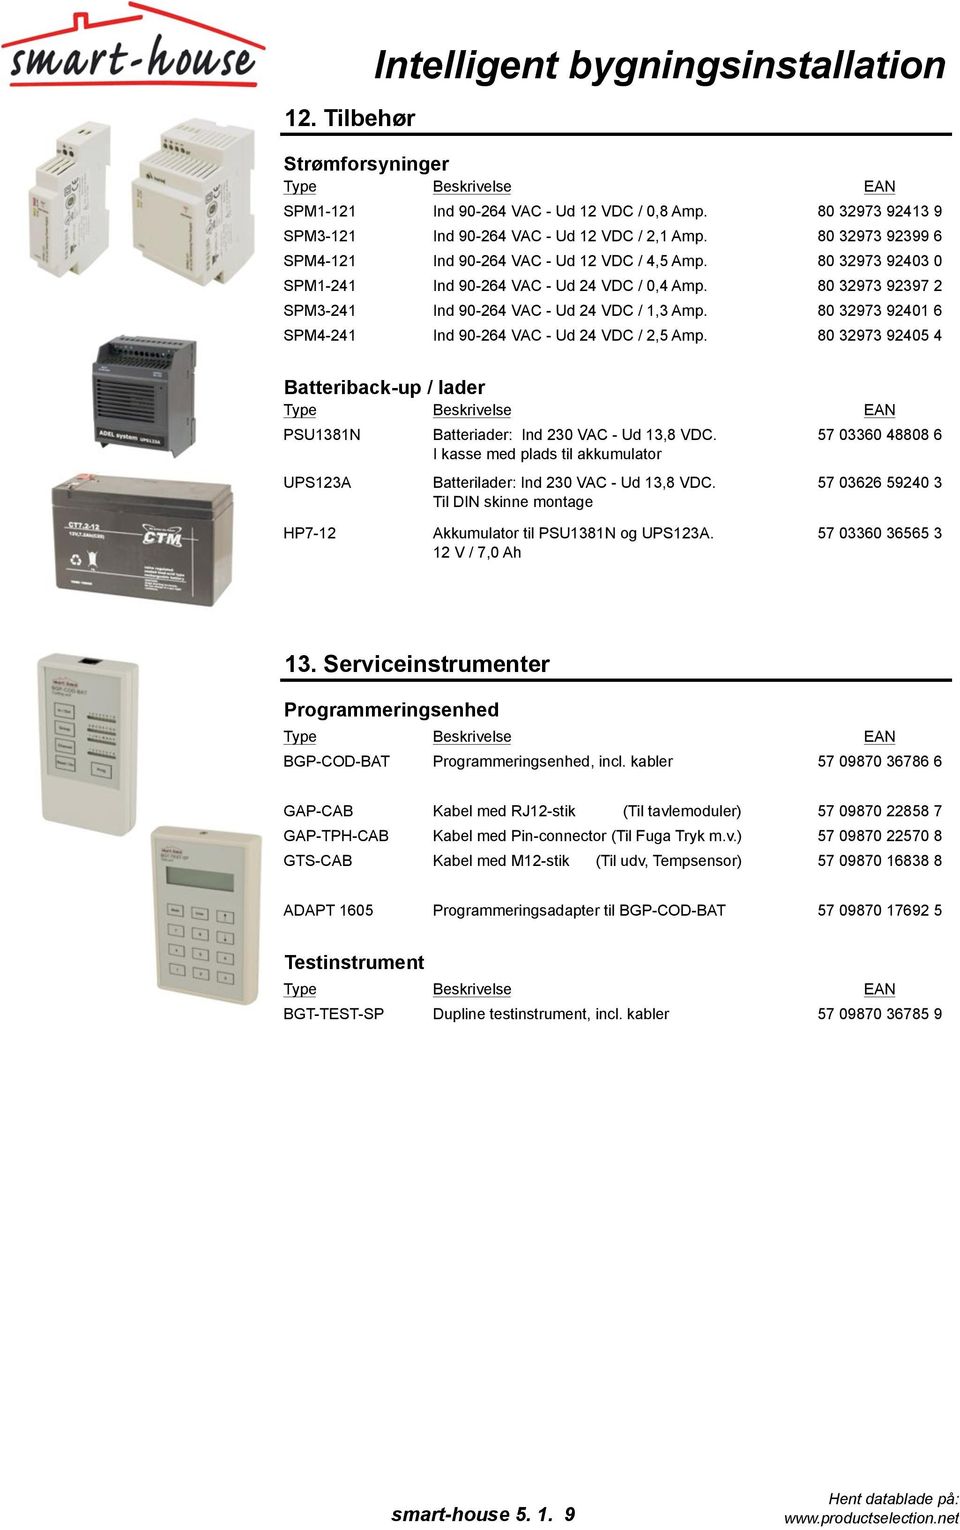 80 32973 92401 6 SPM4-241 Ind 90-264 VAC - Ud 24 VDC / 2,5 Amp. 80 32973 92405 4 Batteriback-up / lader PSU1381N UPS123A Batteriader: Ind 230 VAC - Ud 13,8 VDC.